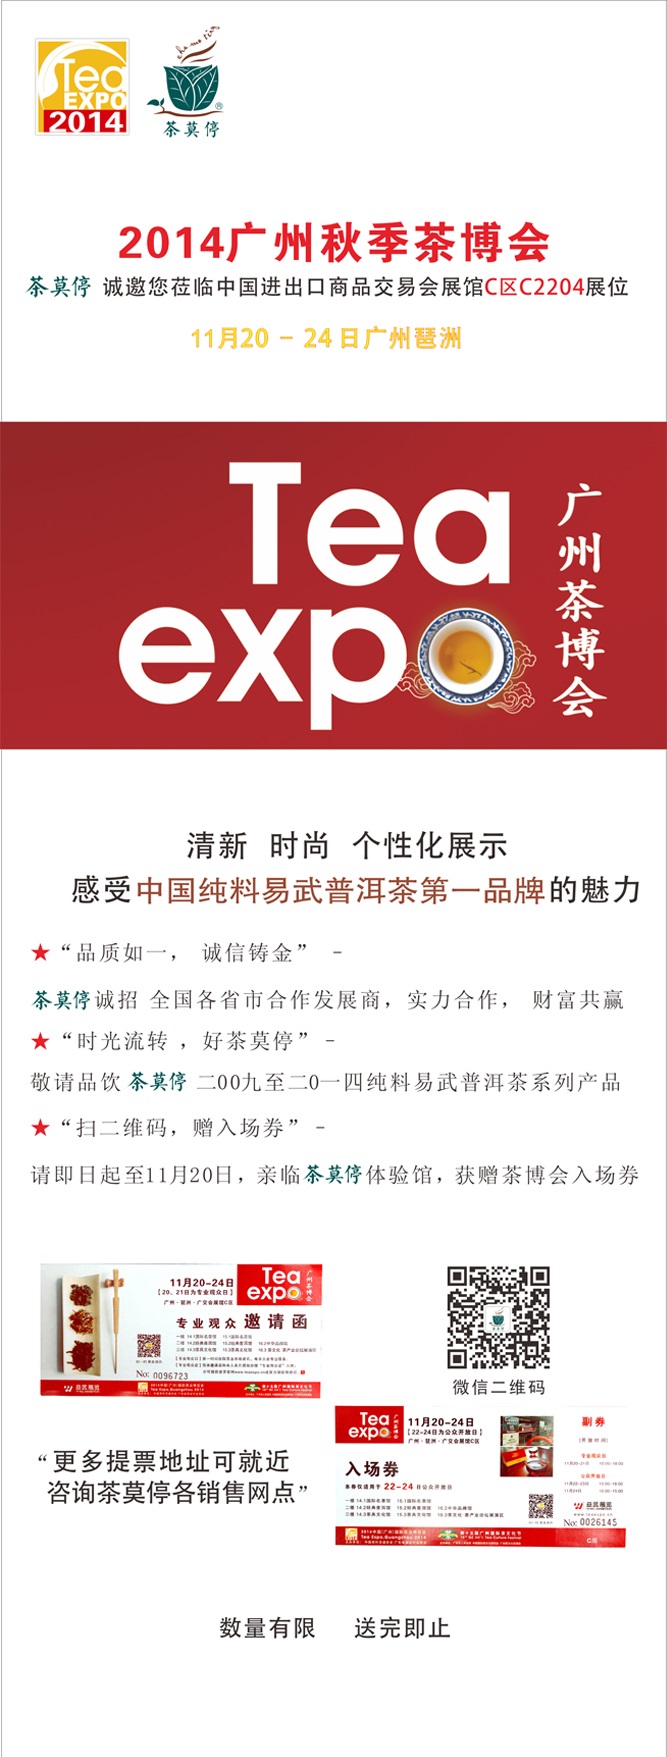  茶莫停邀您参加2014广州秋季茶博会